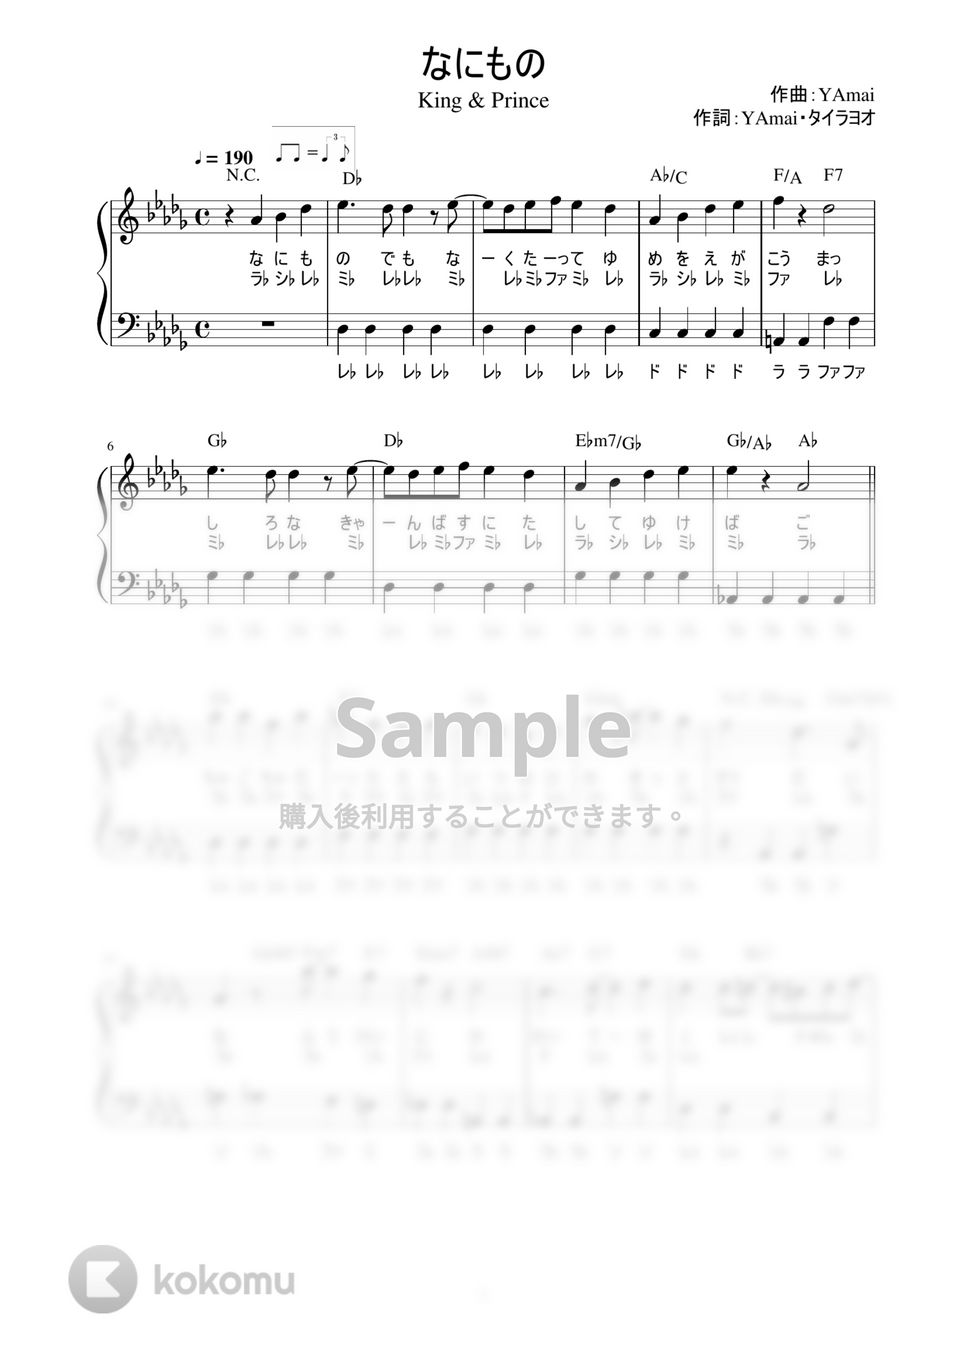 King & Prince - なにもの (かんたん / 歌詞付き / ドレミ付き / 初心者) by piano.tokyo